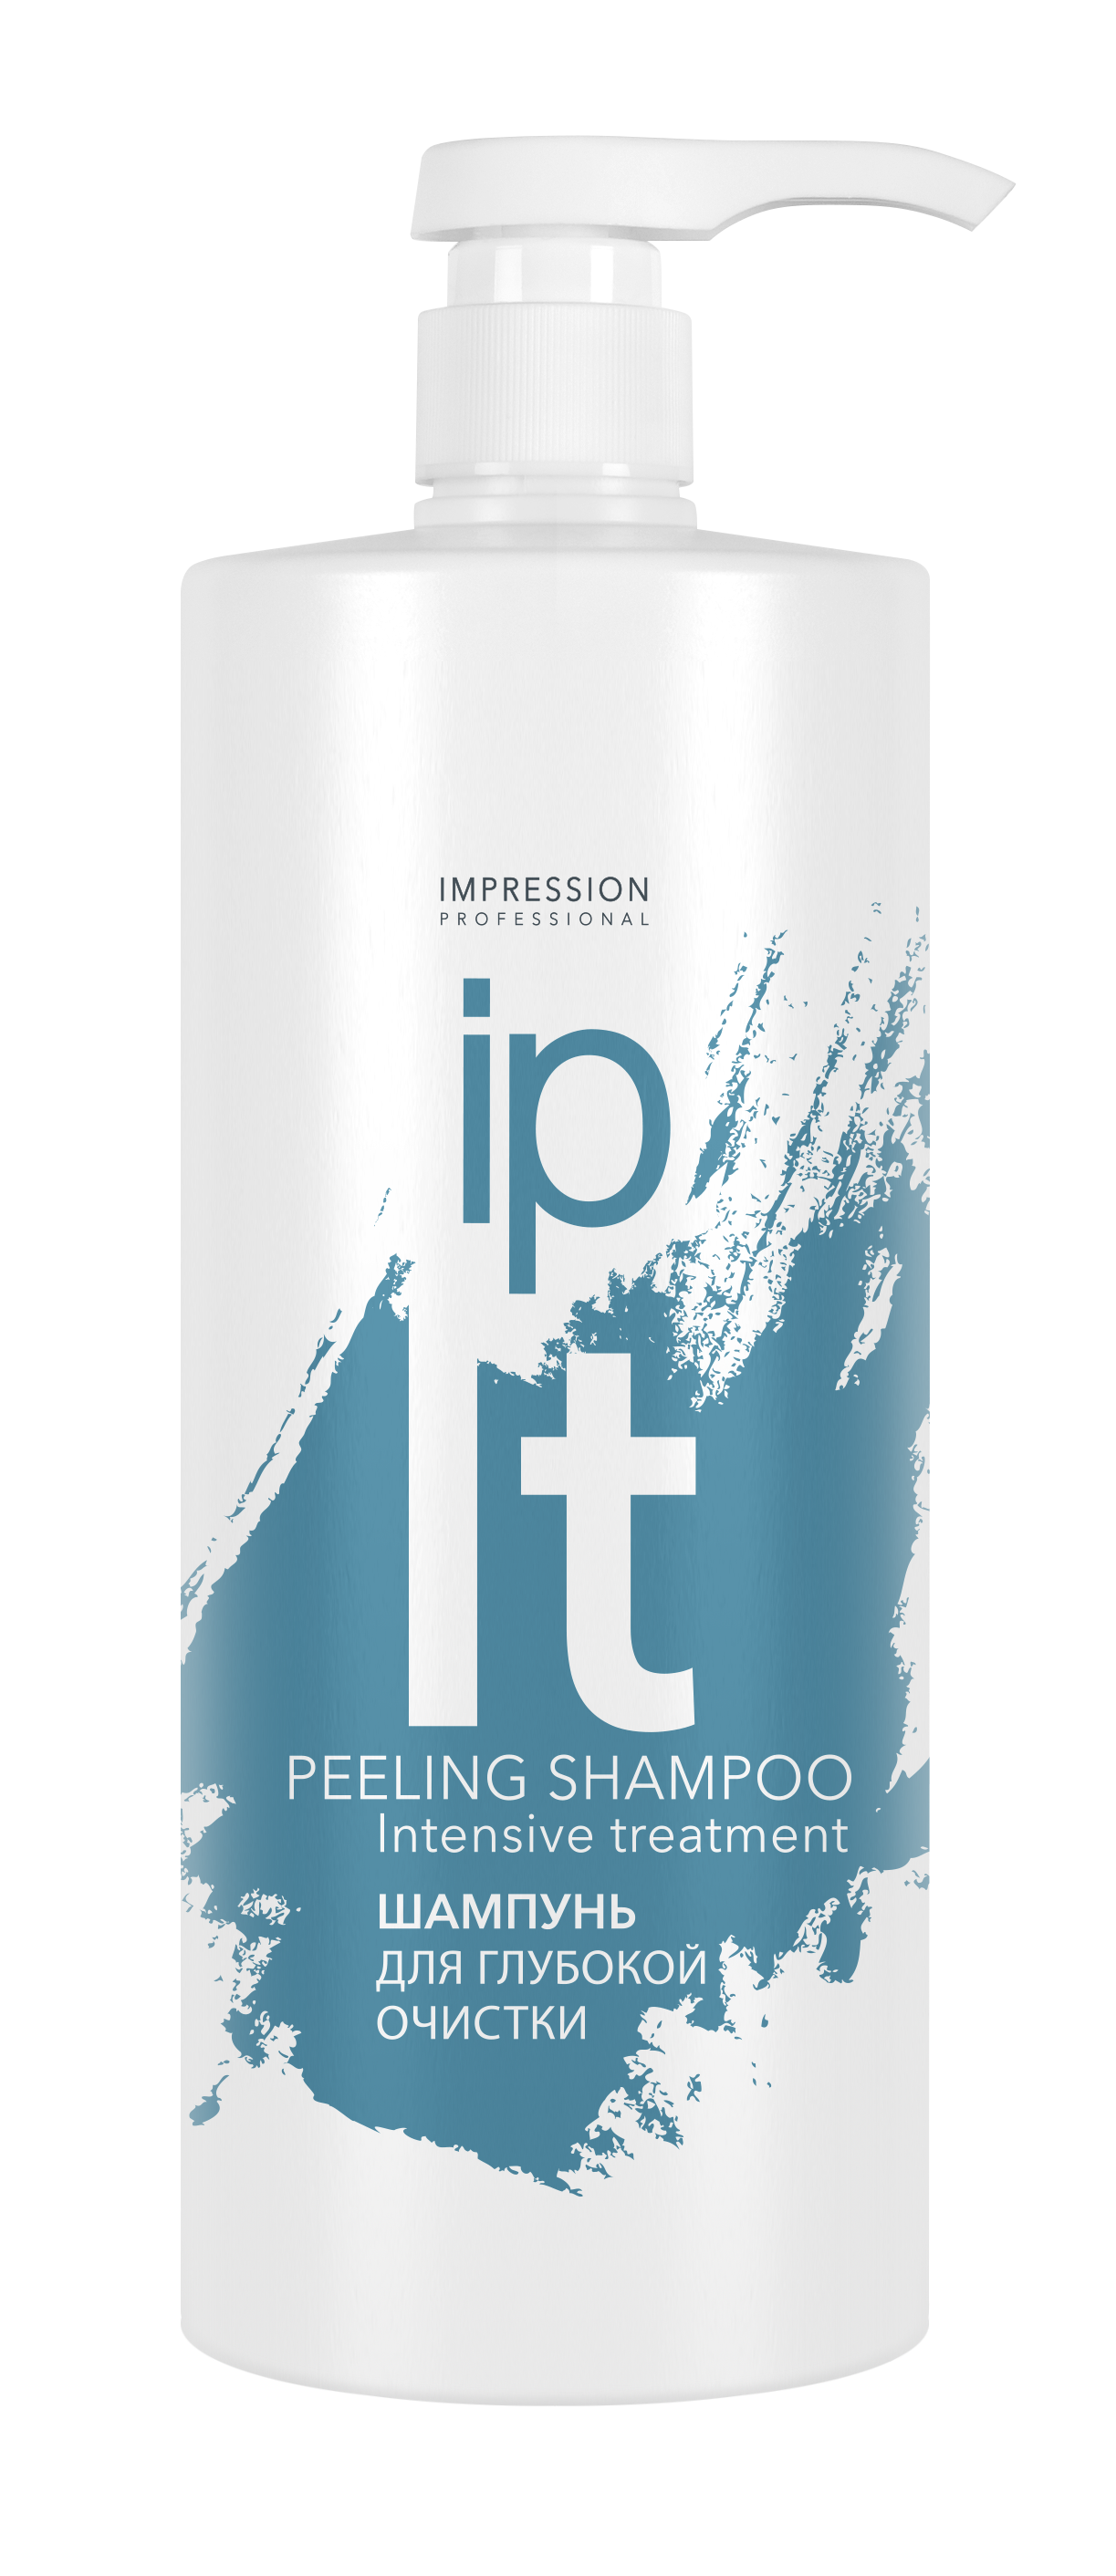 Шампунь для волос Impression Professional Peeling Shampoo глубокой очистки 1000мл - в интернет-магазине tut-beauty.by